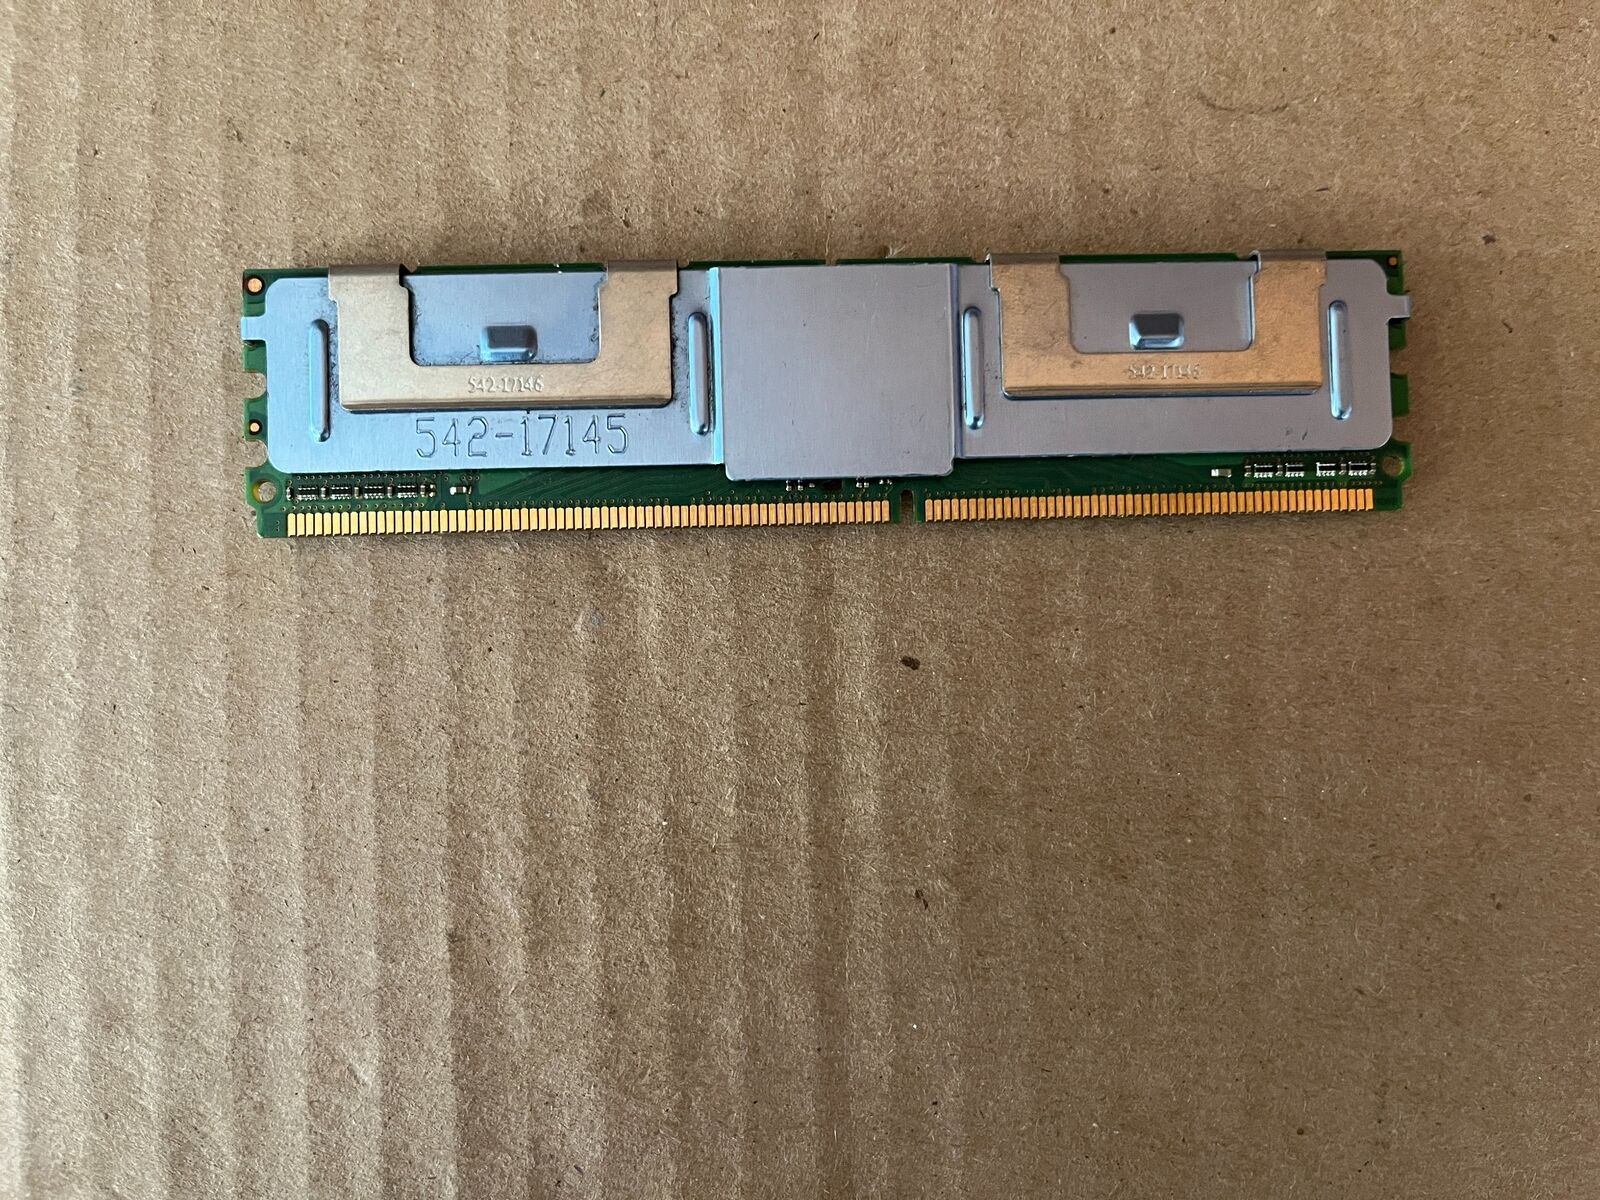 EDGE TECH CORP 8GB-53 PC2-5300F DDR2 MEMORY MODULE J8-2(12)